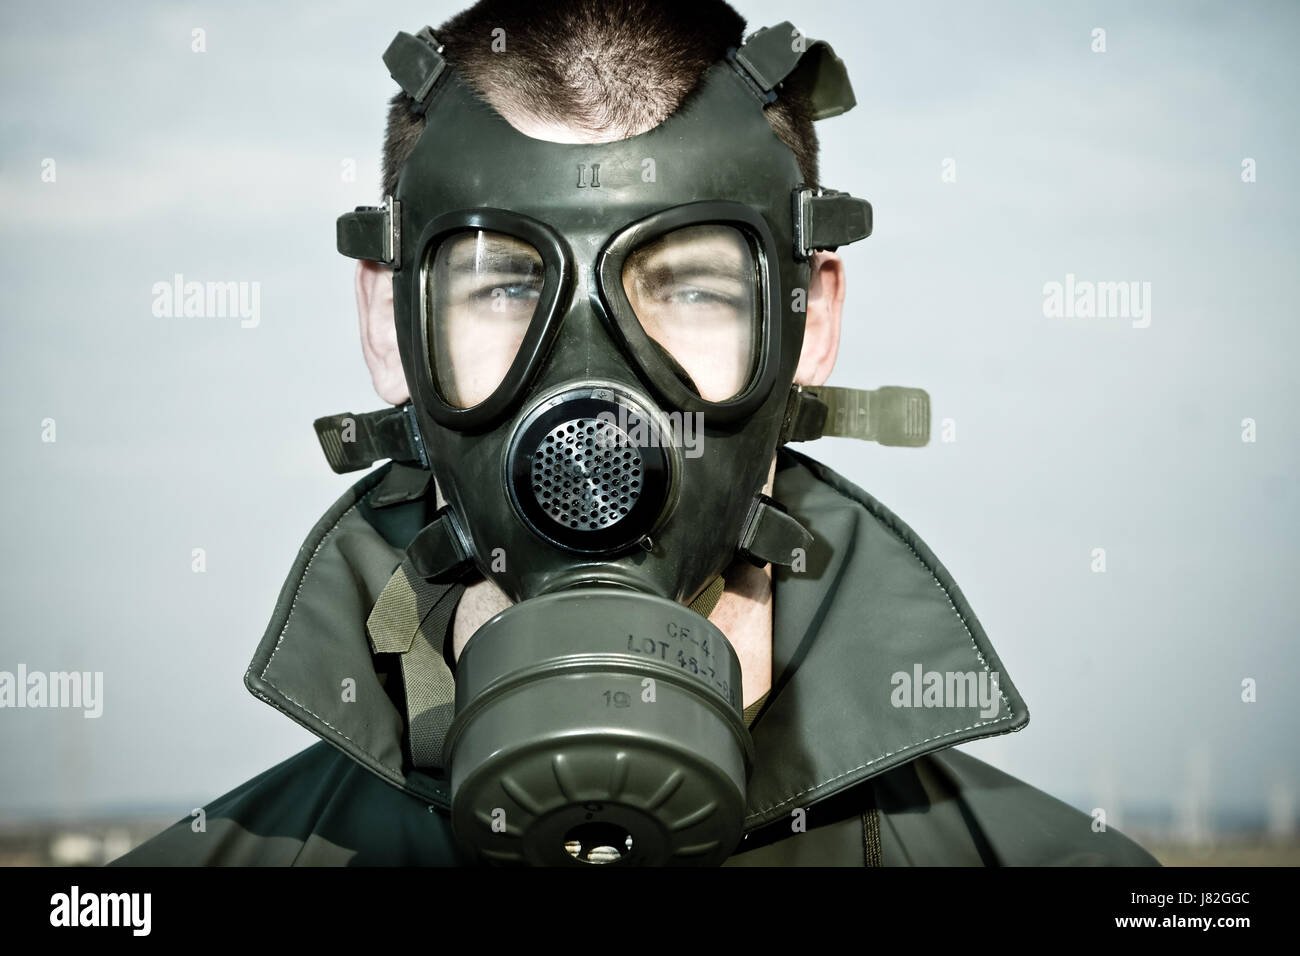 Protection respiratoire en cas de catastrophe nucléaire homme masque à gaz fumée fumer fume fume industrie Banque D'Images